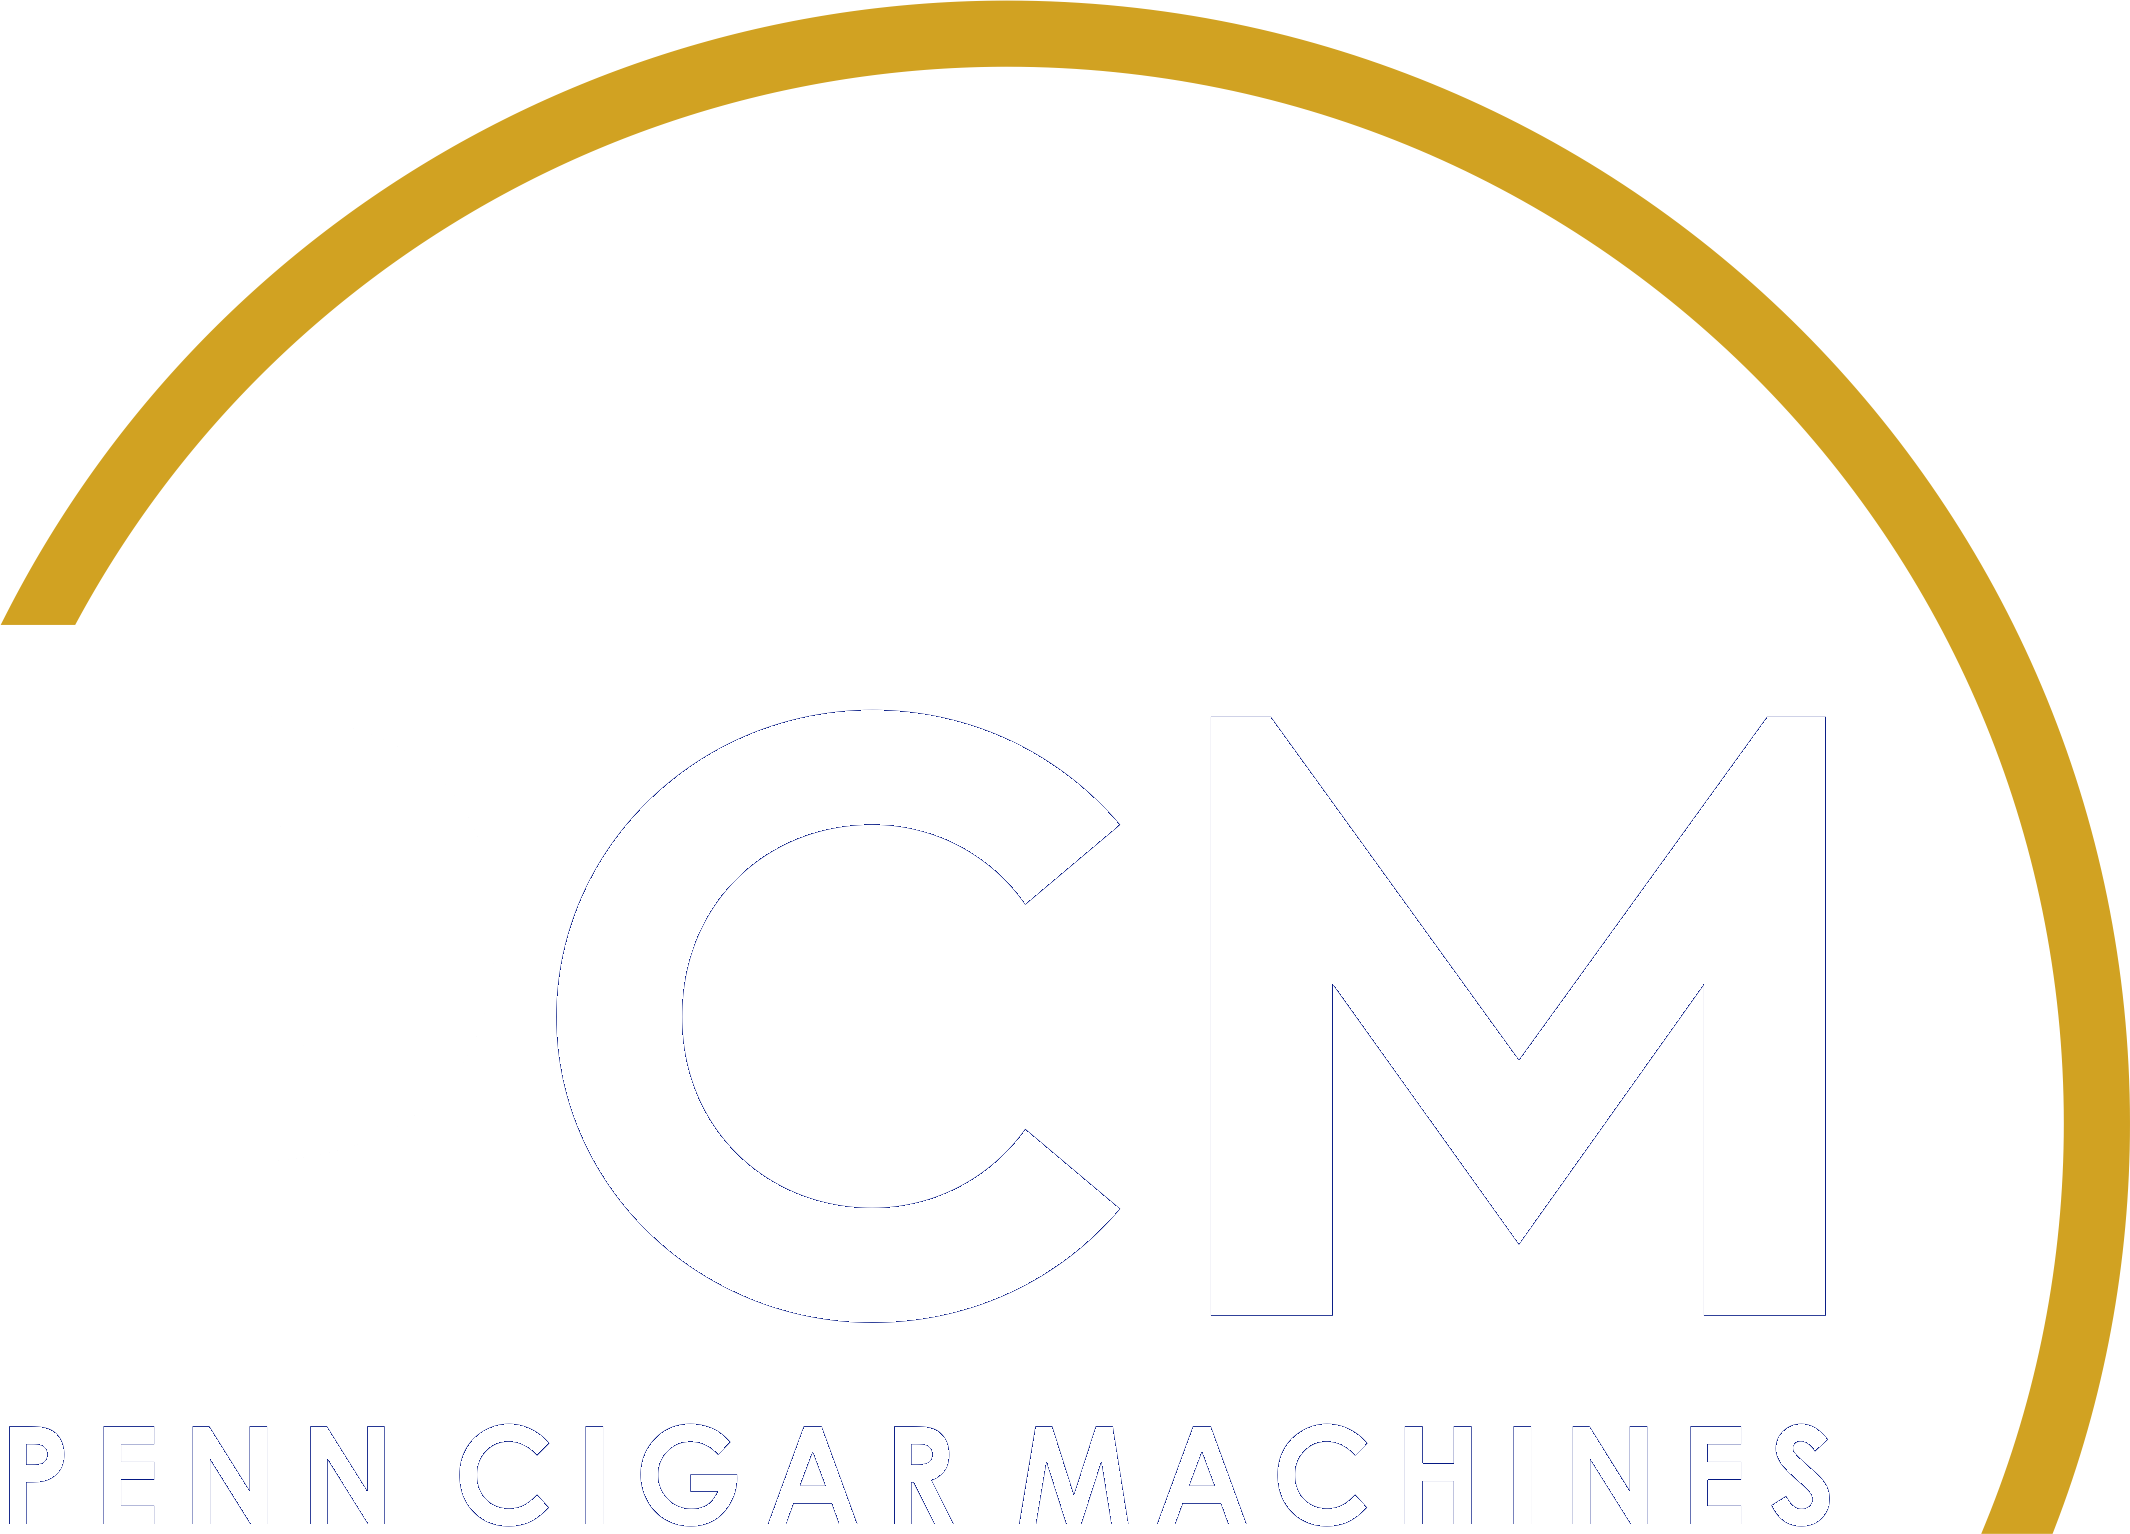 Penn Cigar Machines